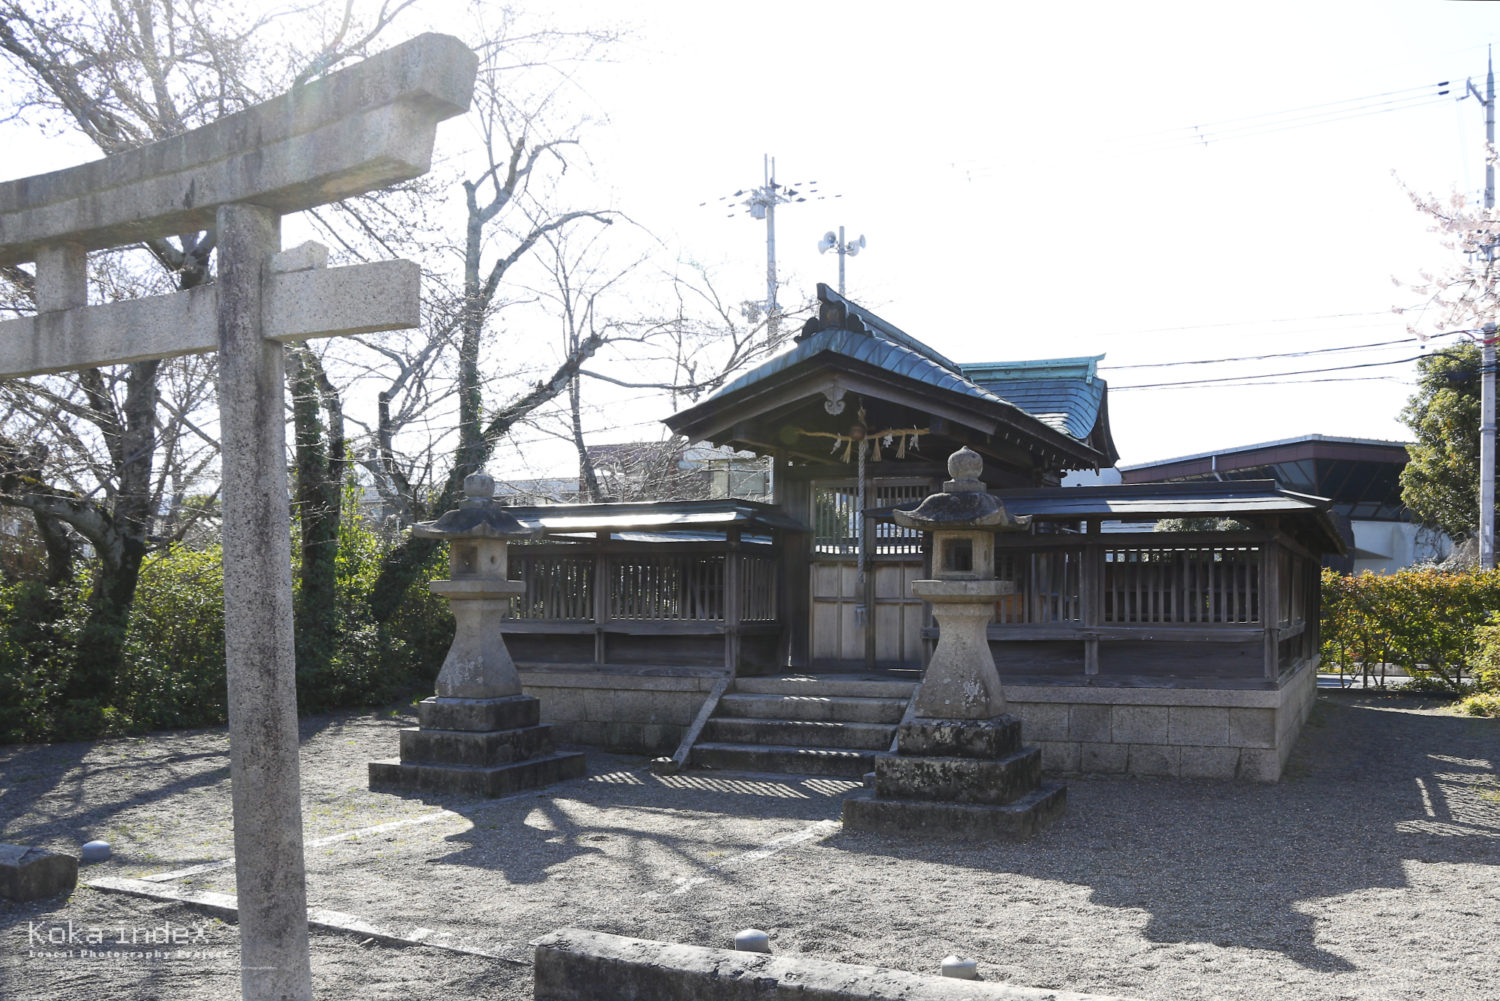 十字形洋剣「水口レイピア」で話題になった、甲賀市水口町の藤栄神社